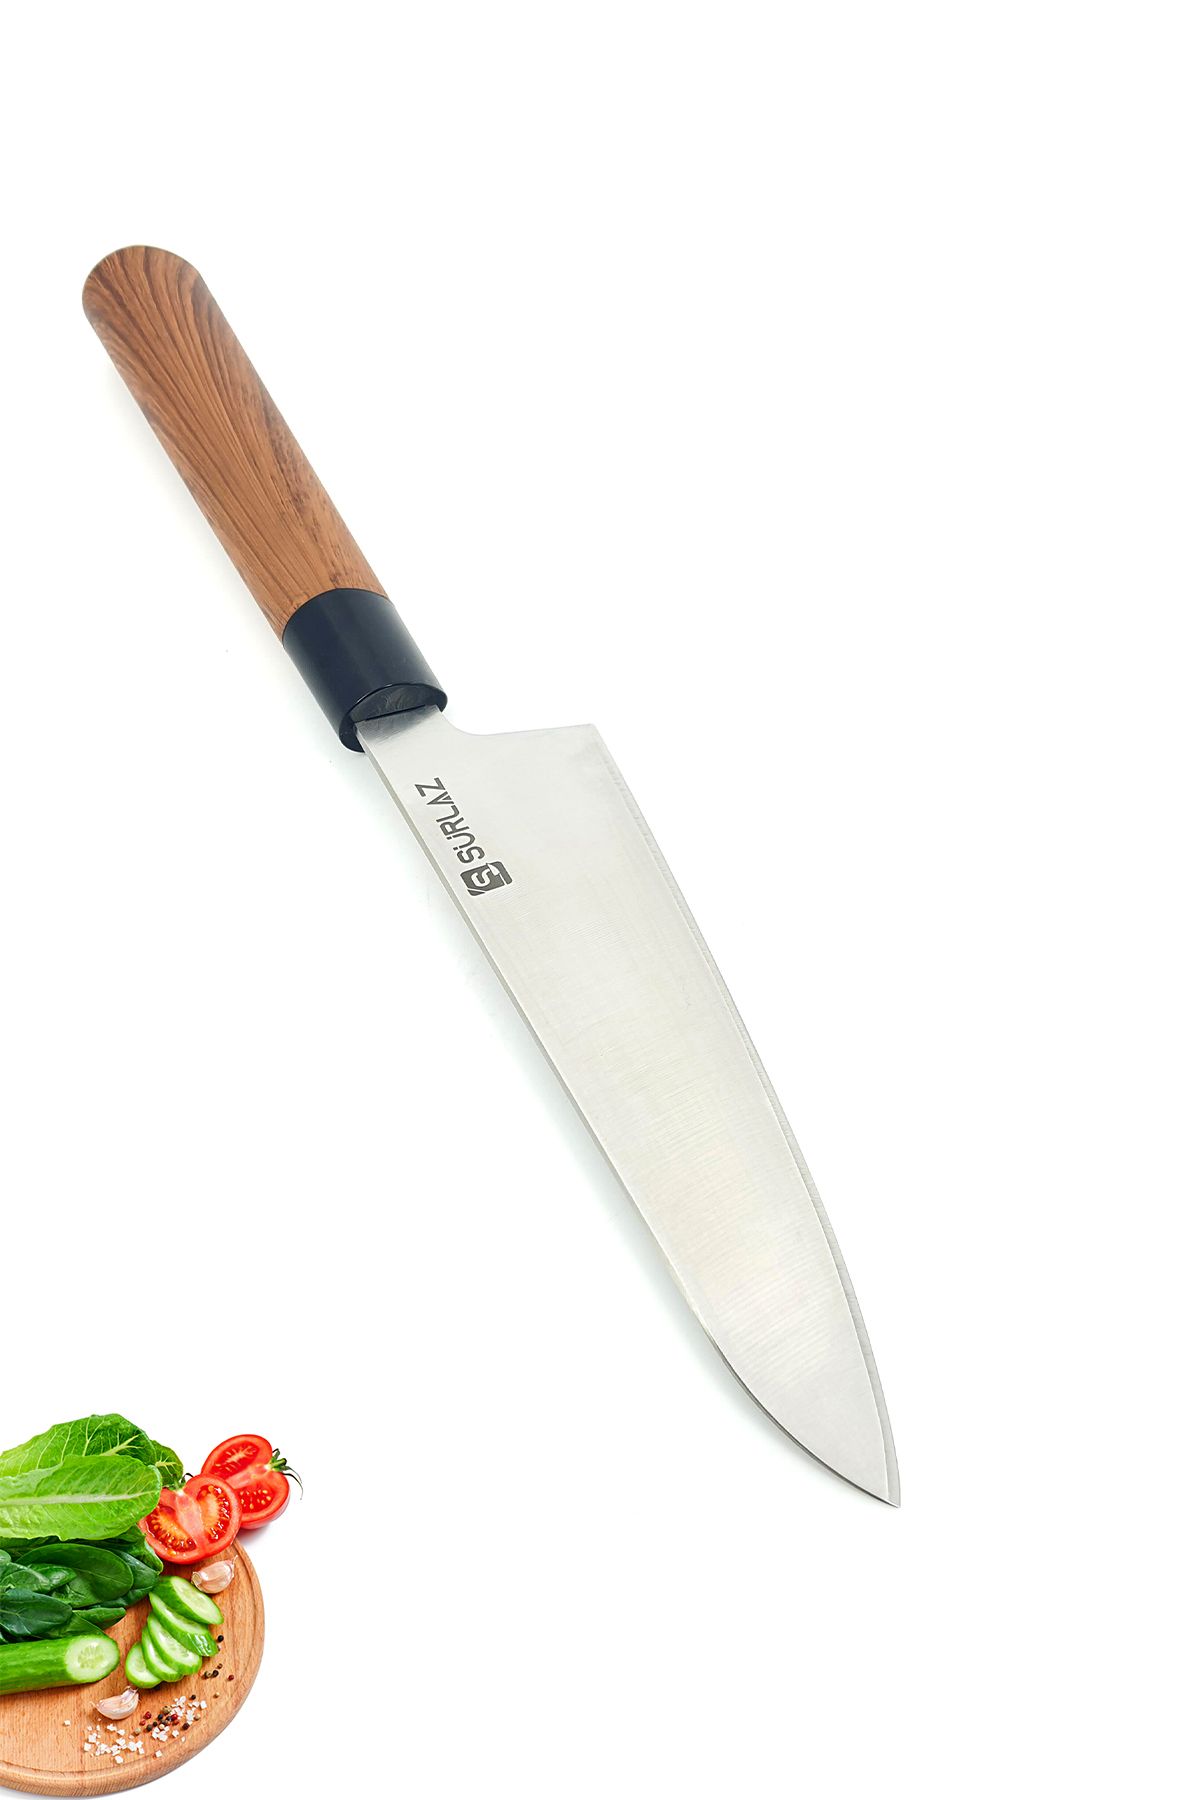 SürLaz Craft Santoku Şef Bıçağı Japon Stili Isme Özel Hediyelik Bıçak